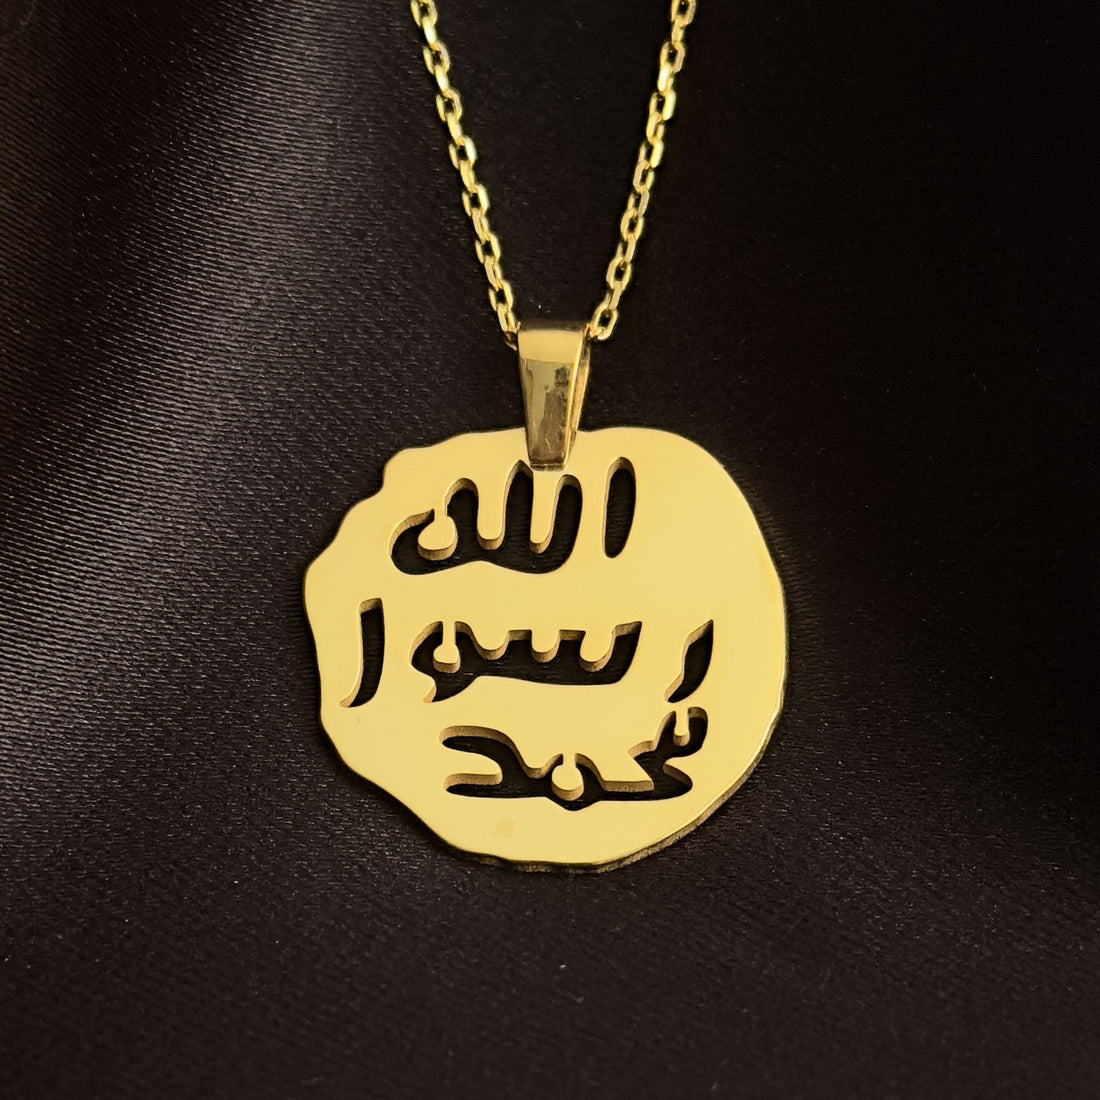 islamic-jewelry-prophet-muhammad&